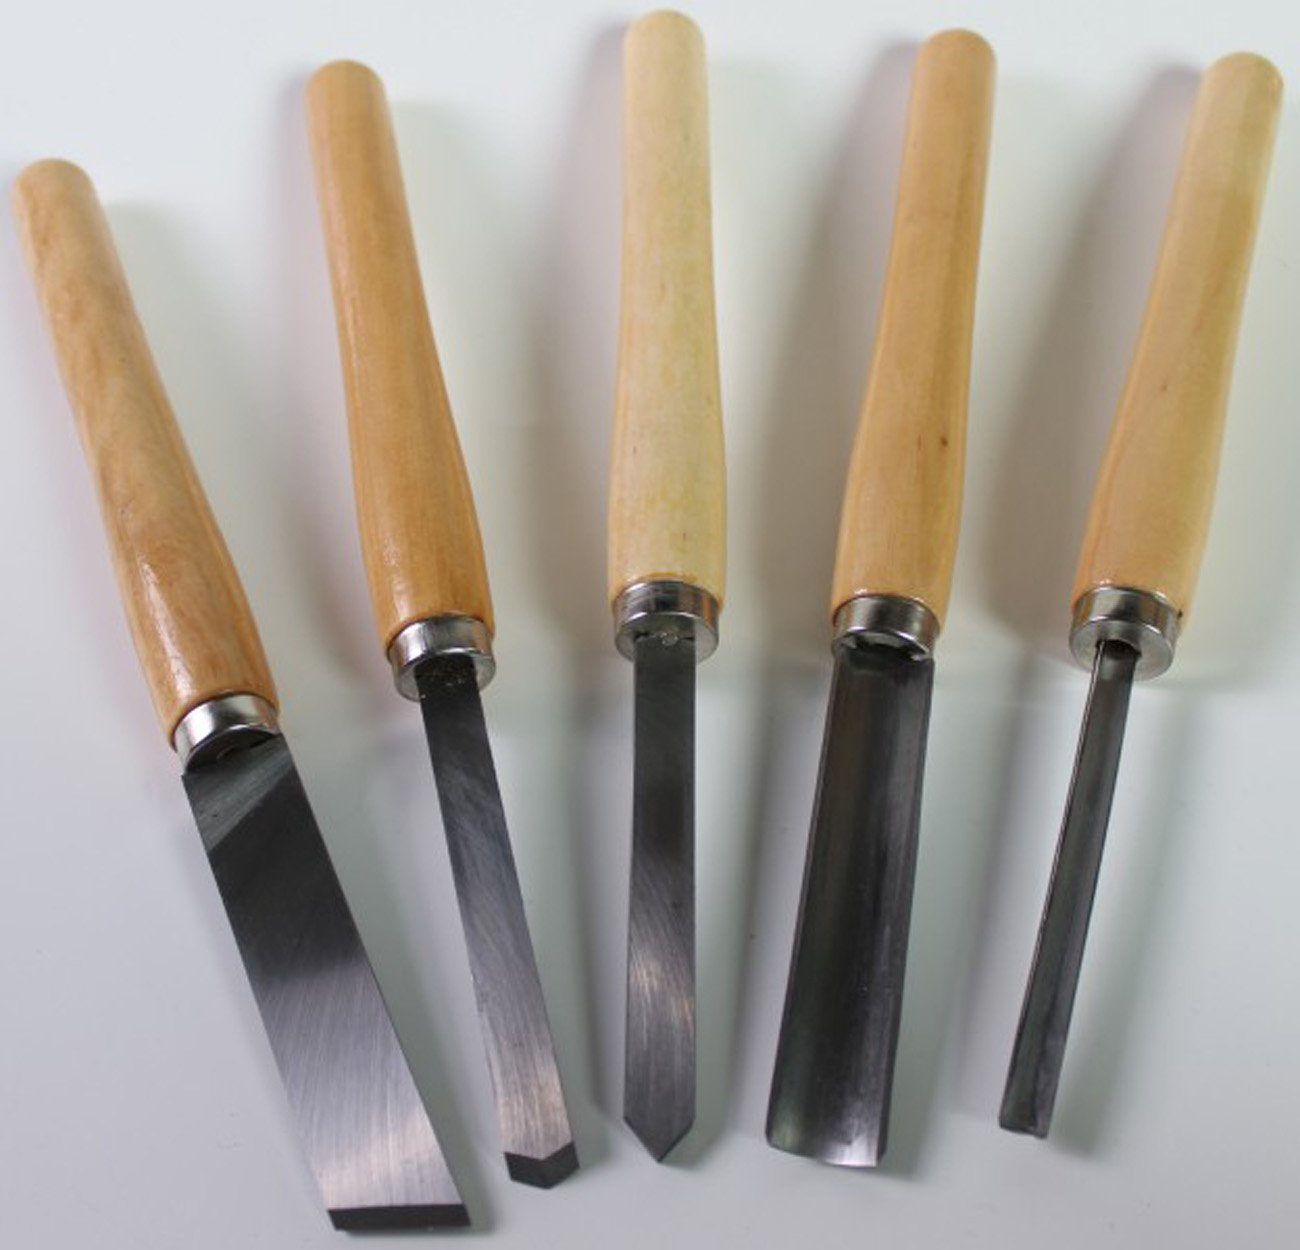 myMAW Universalmesser 5 Drechseleisen Messer Drechselbeitel drechseln drechsel … Beitel